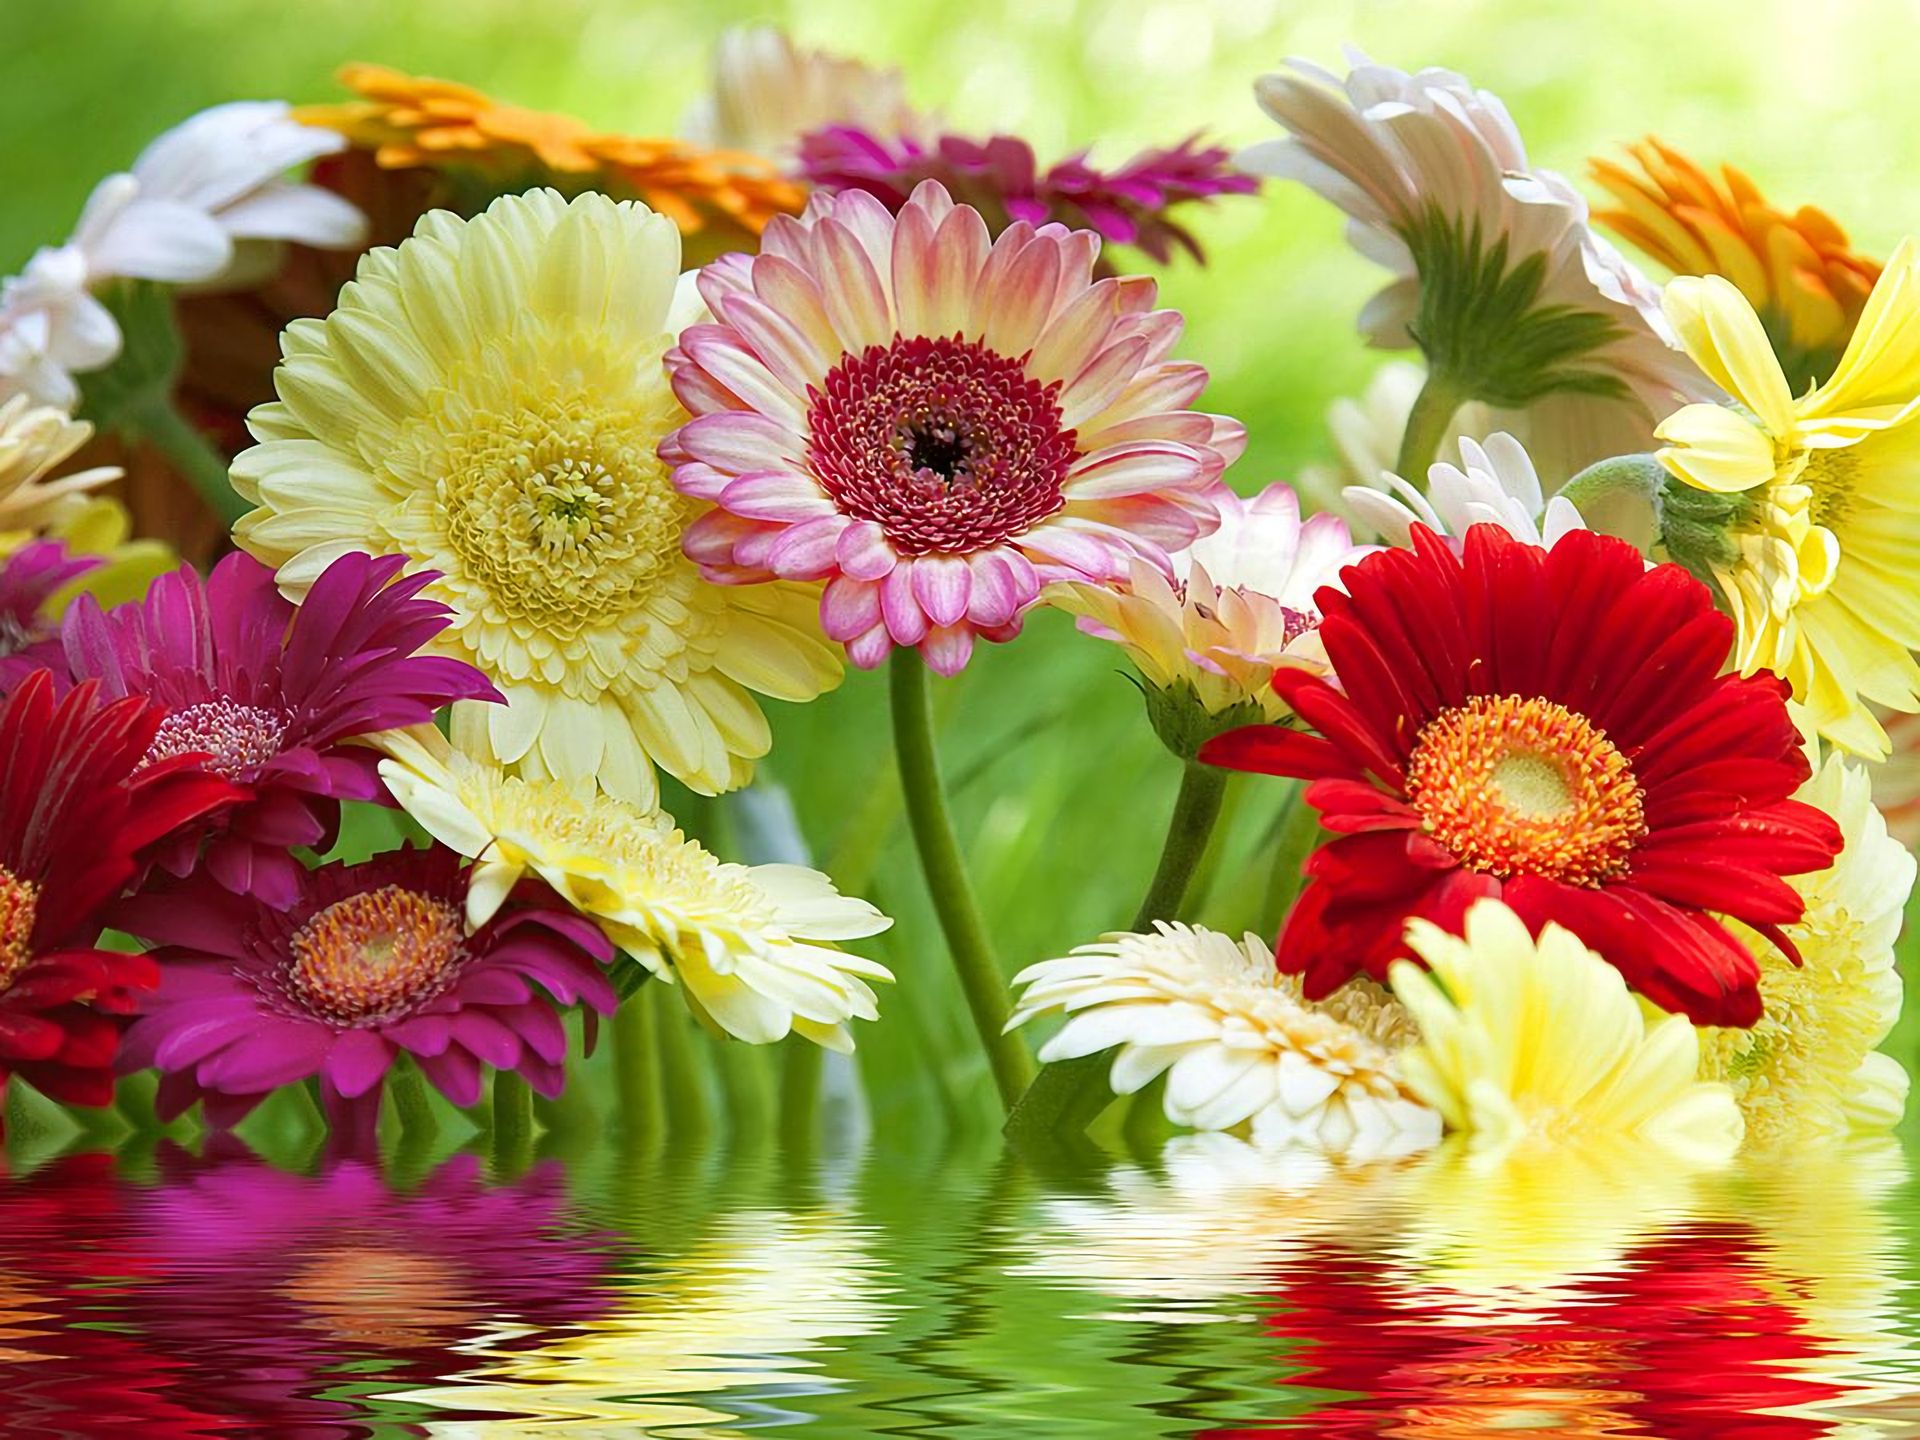 Descarga gratuita de fondo de pantalla para móvil de Flores, Gerberas, Flor, Flor Amarilla, Flor Purpura, Flor Roja, Tierra/naturaleza, Reflejo.